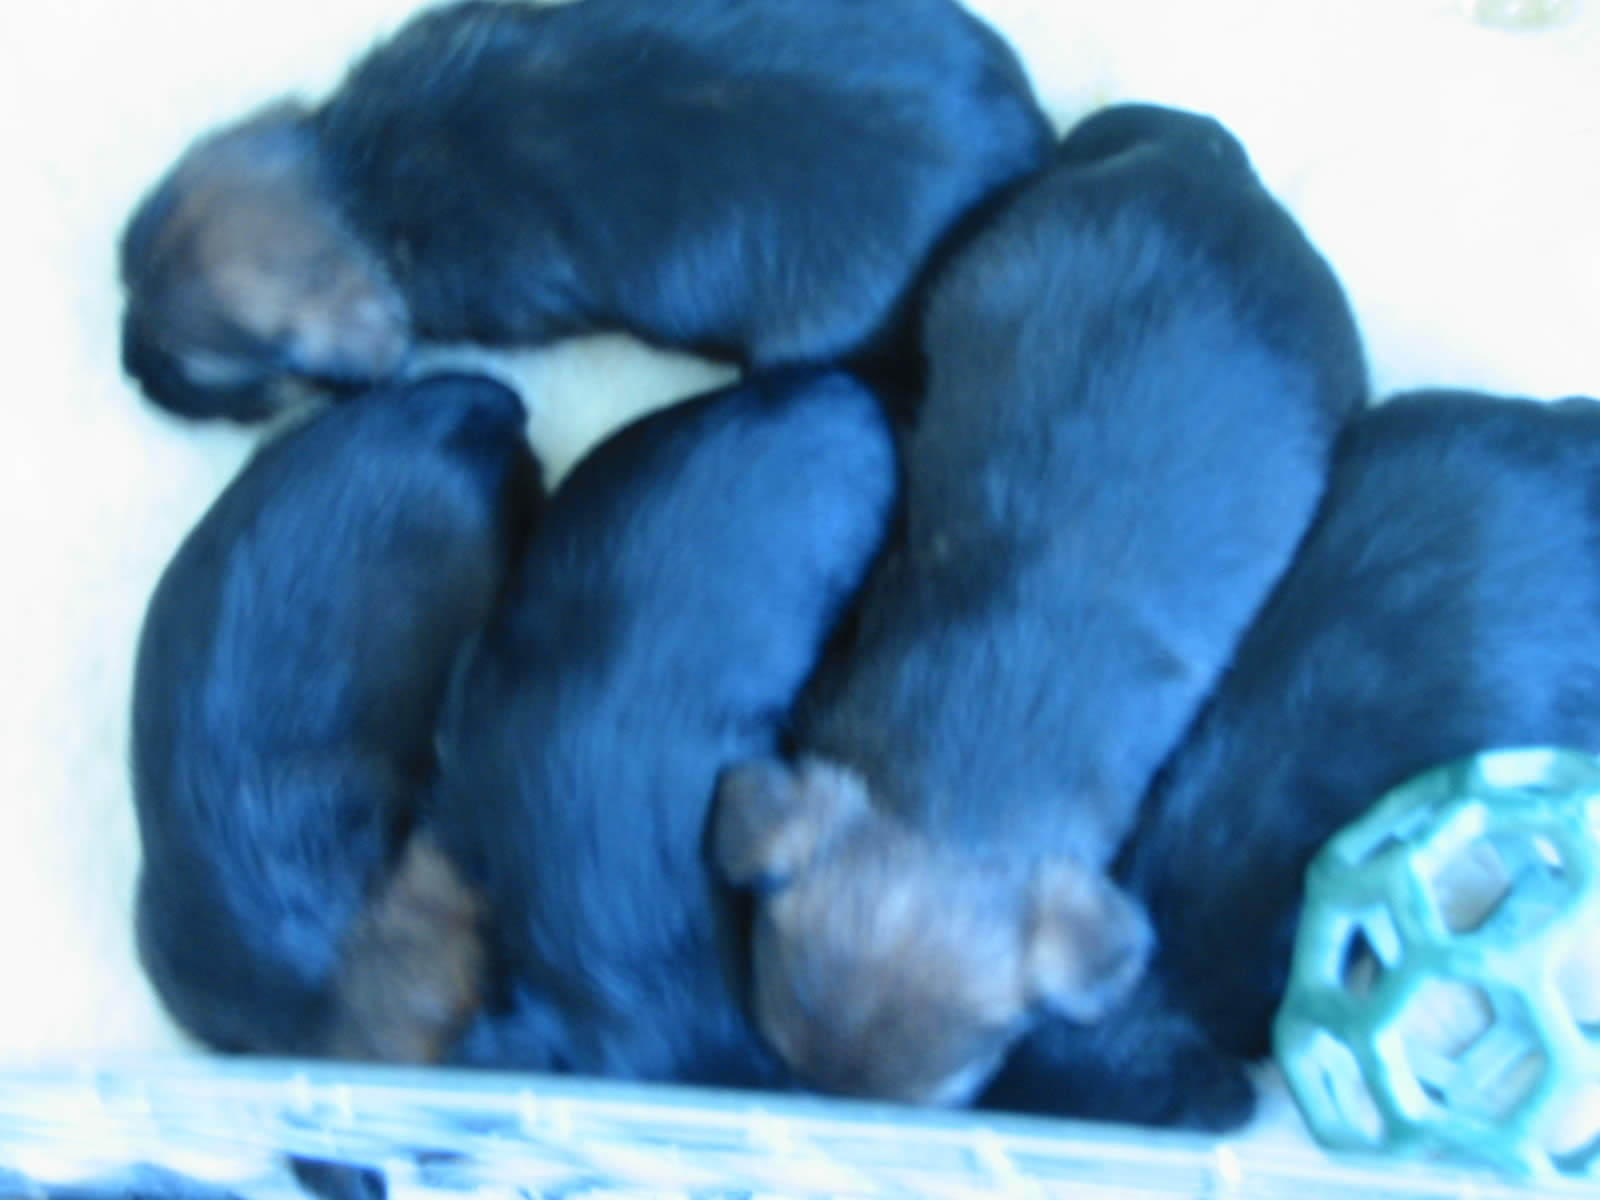 pups sleeping in their pack